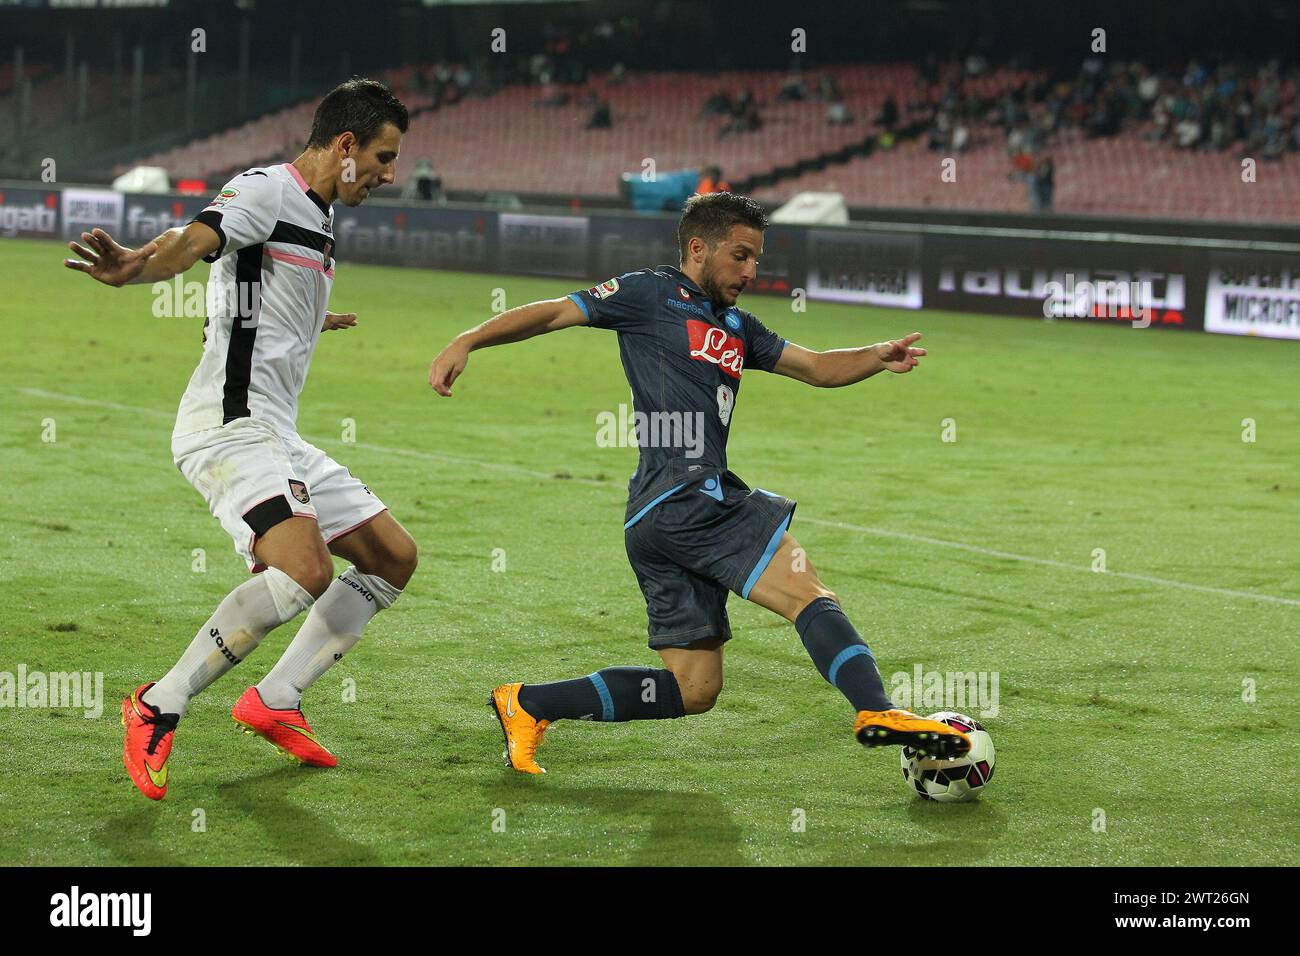 Asciuga Mertens con Andelkovic durante una partita di calcio, allo stadio San Paolo, tra Napoli e Palermo Foto Stock